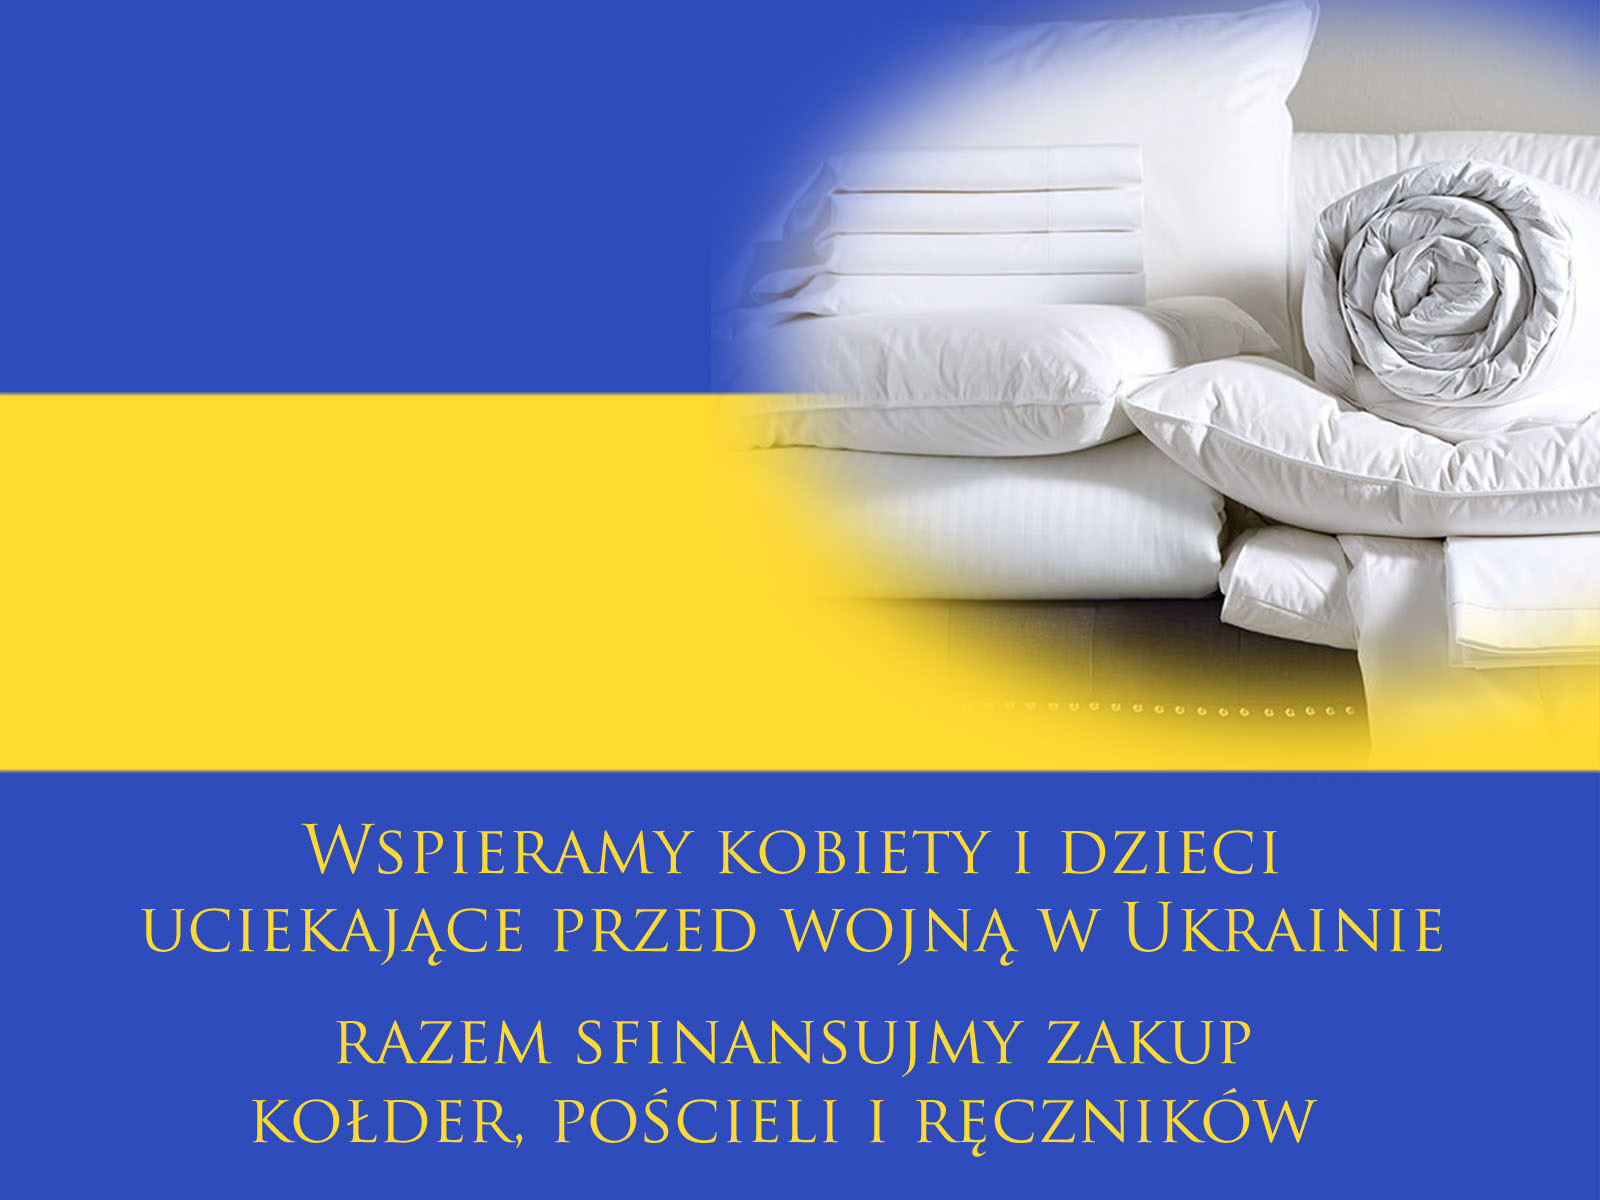 Pomóż sfinansować zakup pakietu kołder, pościeli i ręczników dla kobiet z dziećmi z Ukrainy